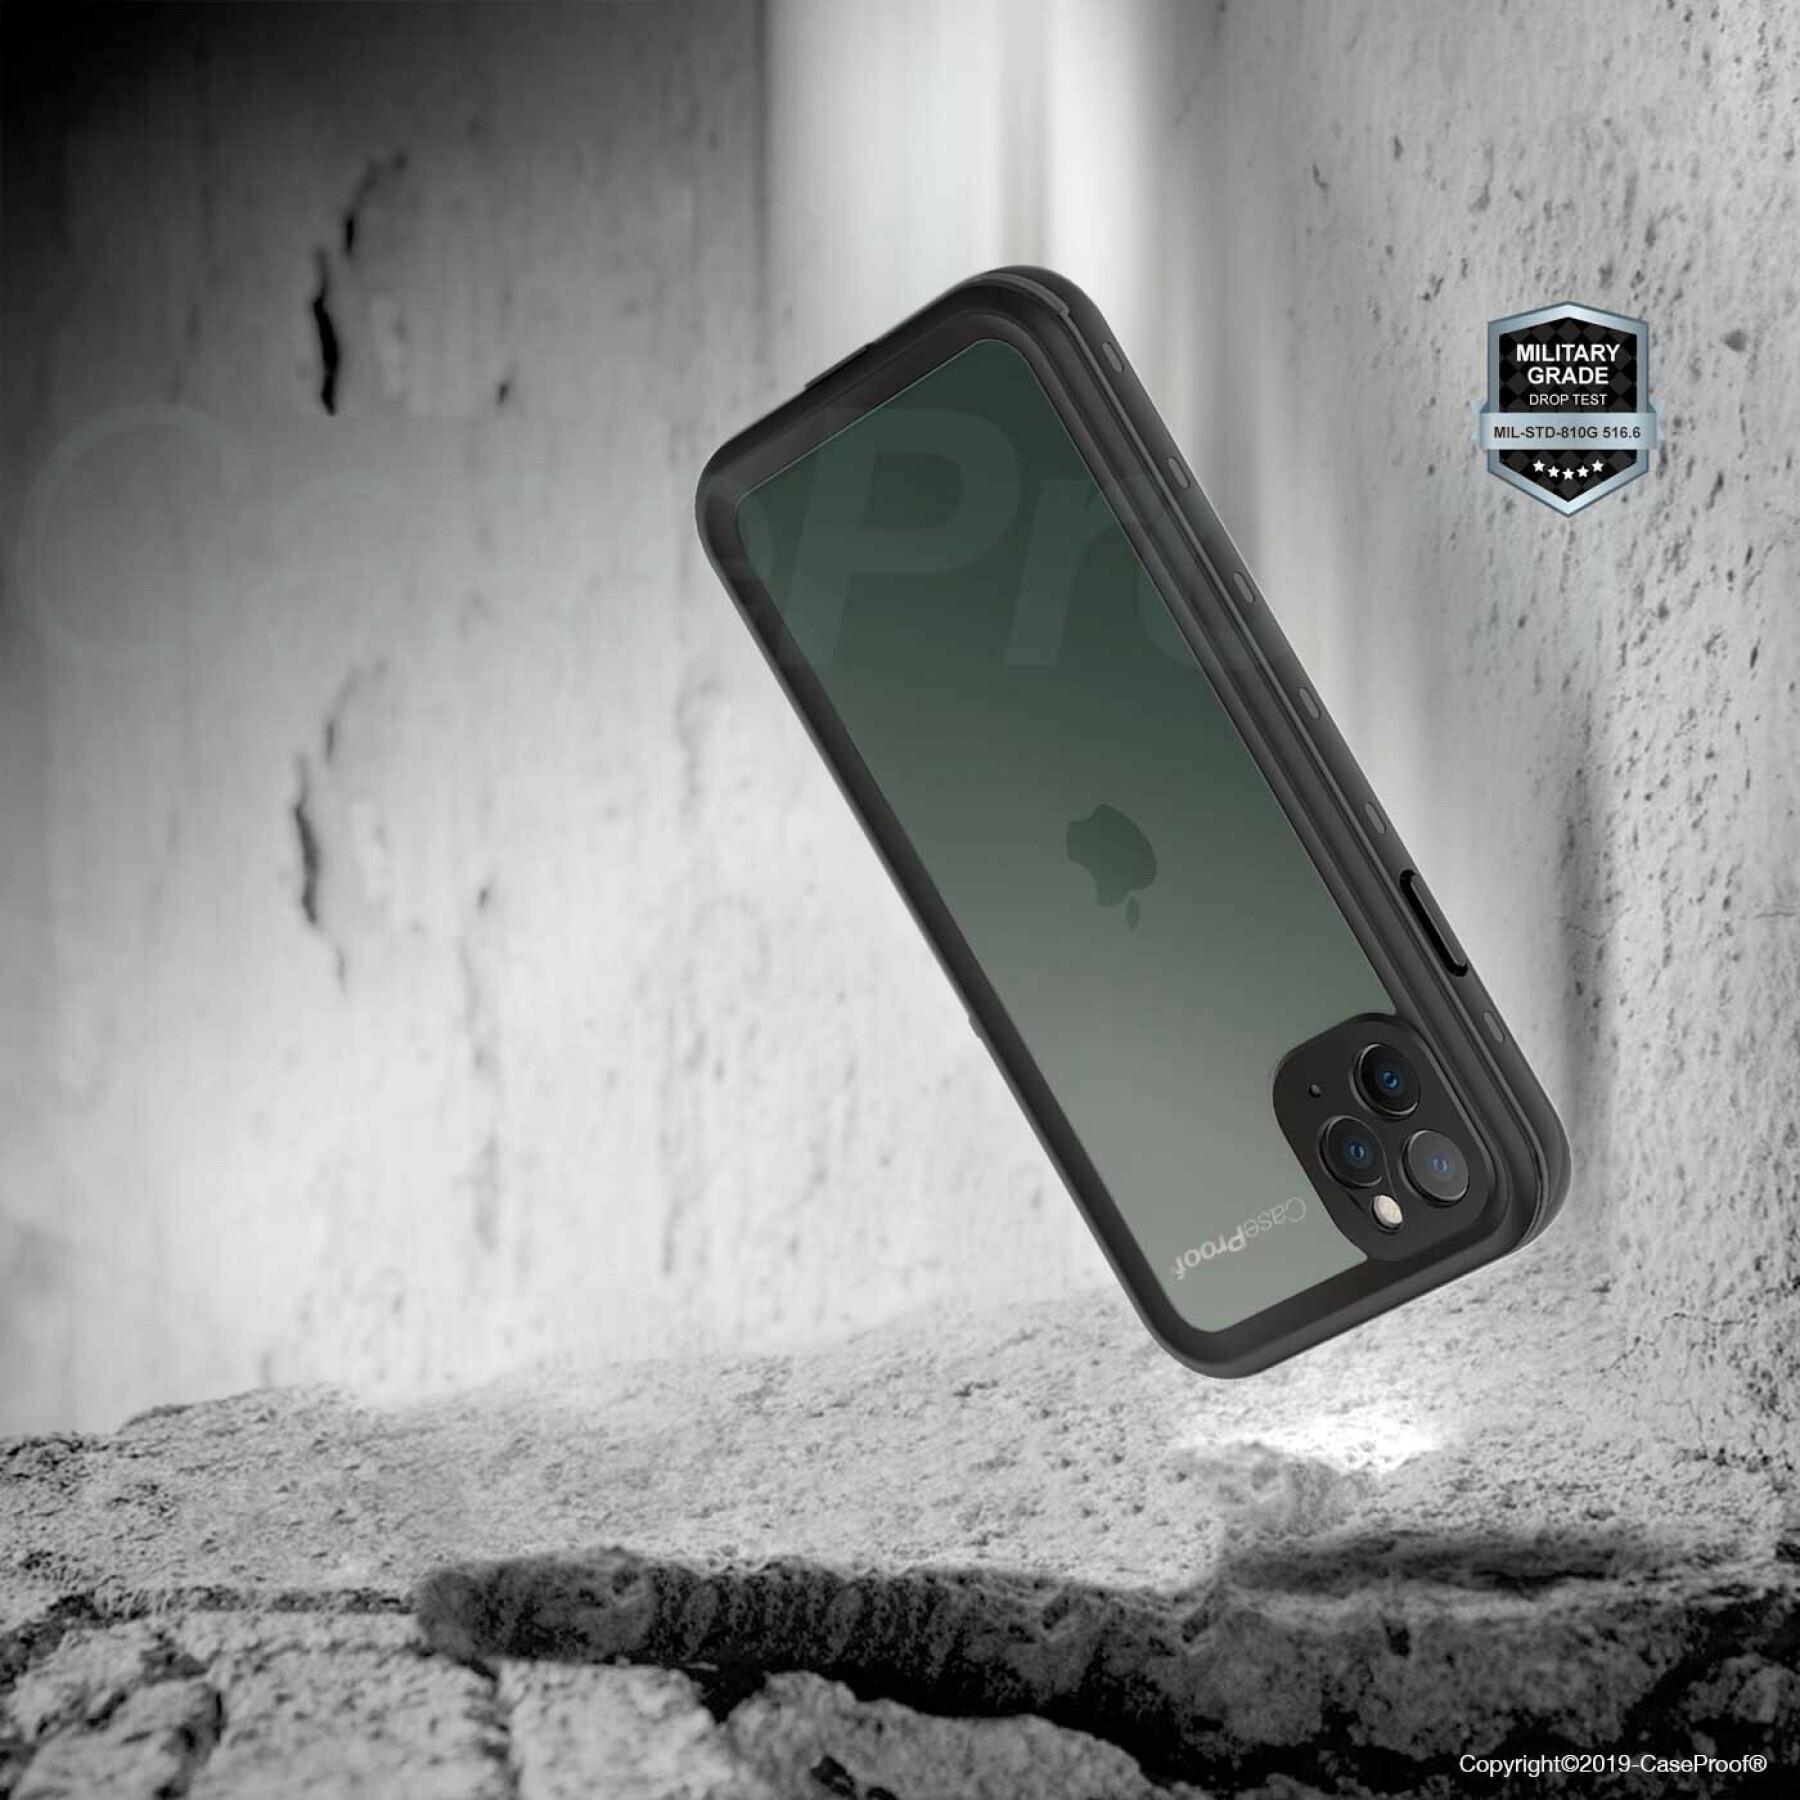 Coque smartphone iPhone 11 Pro Max waterproof étanche et antichoc CaseProof